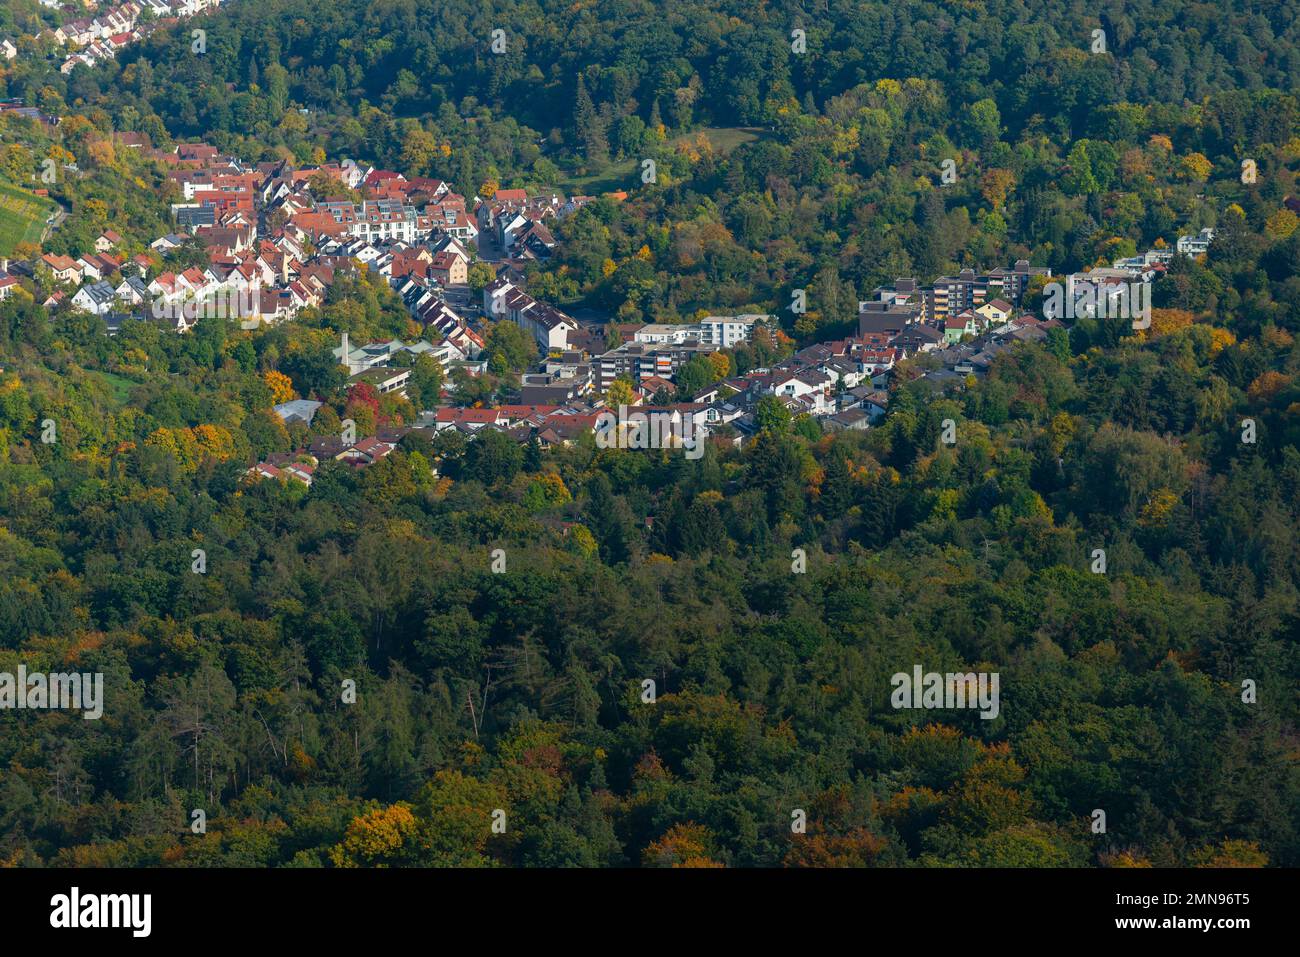 Vue aérienne de la tour de télévision sur Hohen Bopser, Degerloch la ville, Stuttgart, Bade-Wurtemberg, Allemagne du Sud, Europe centrale Banque D'Images